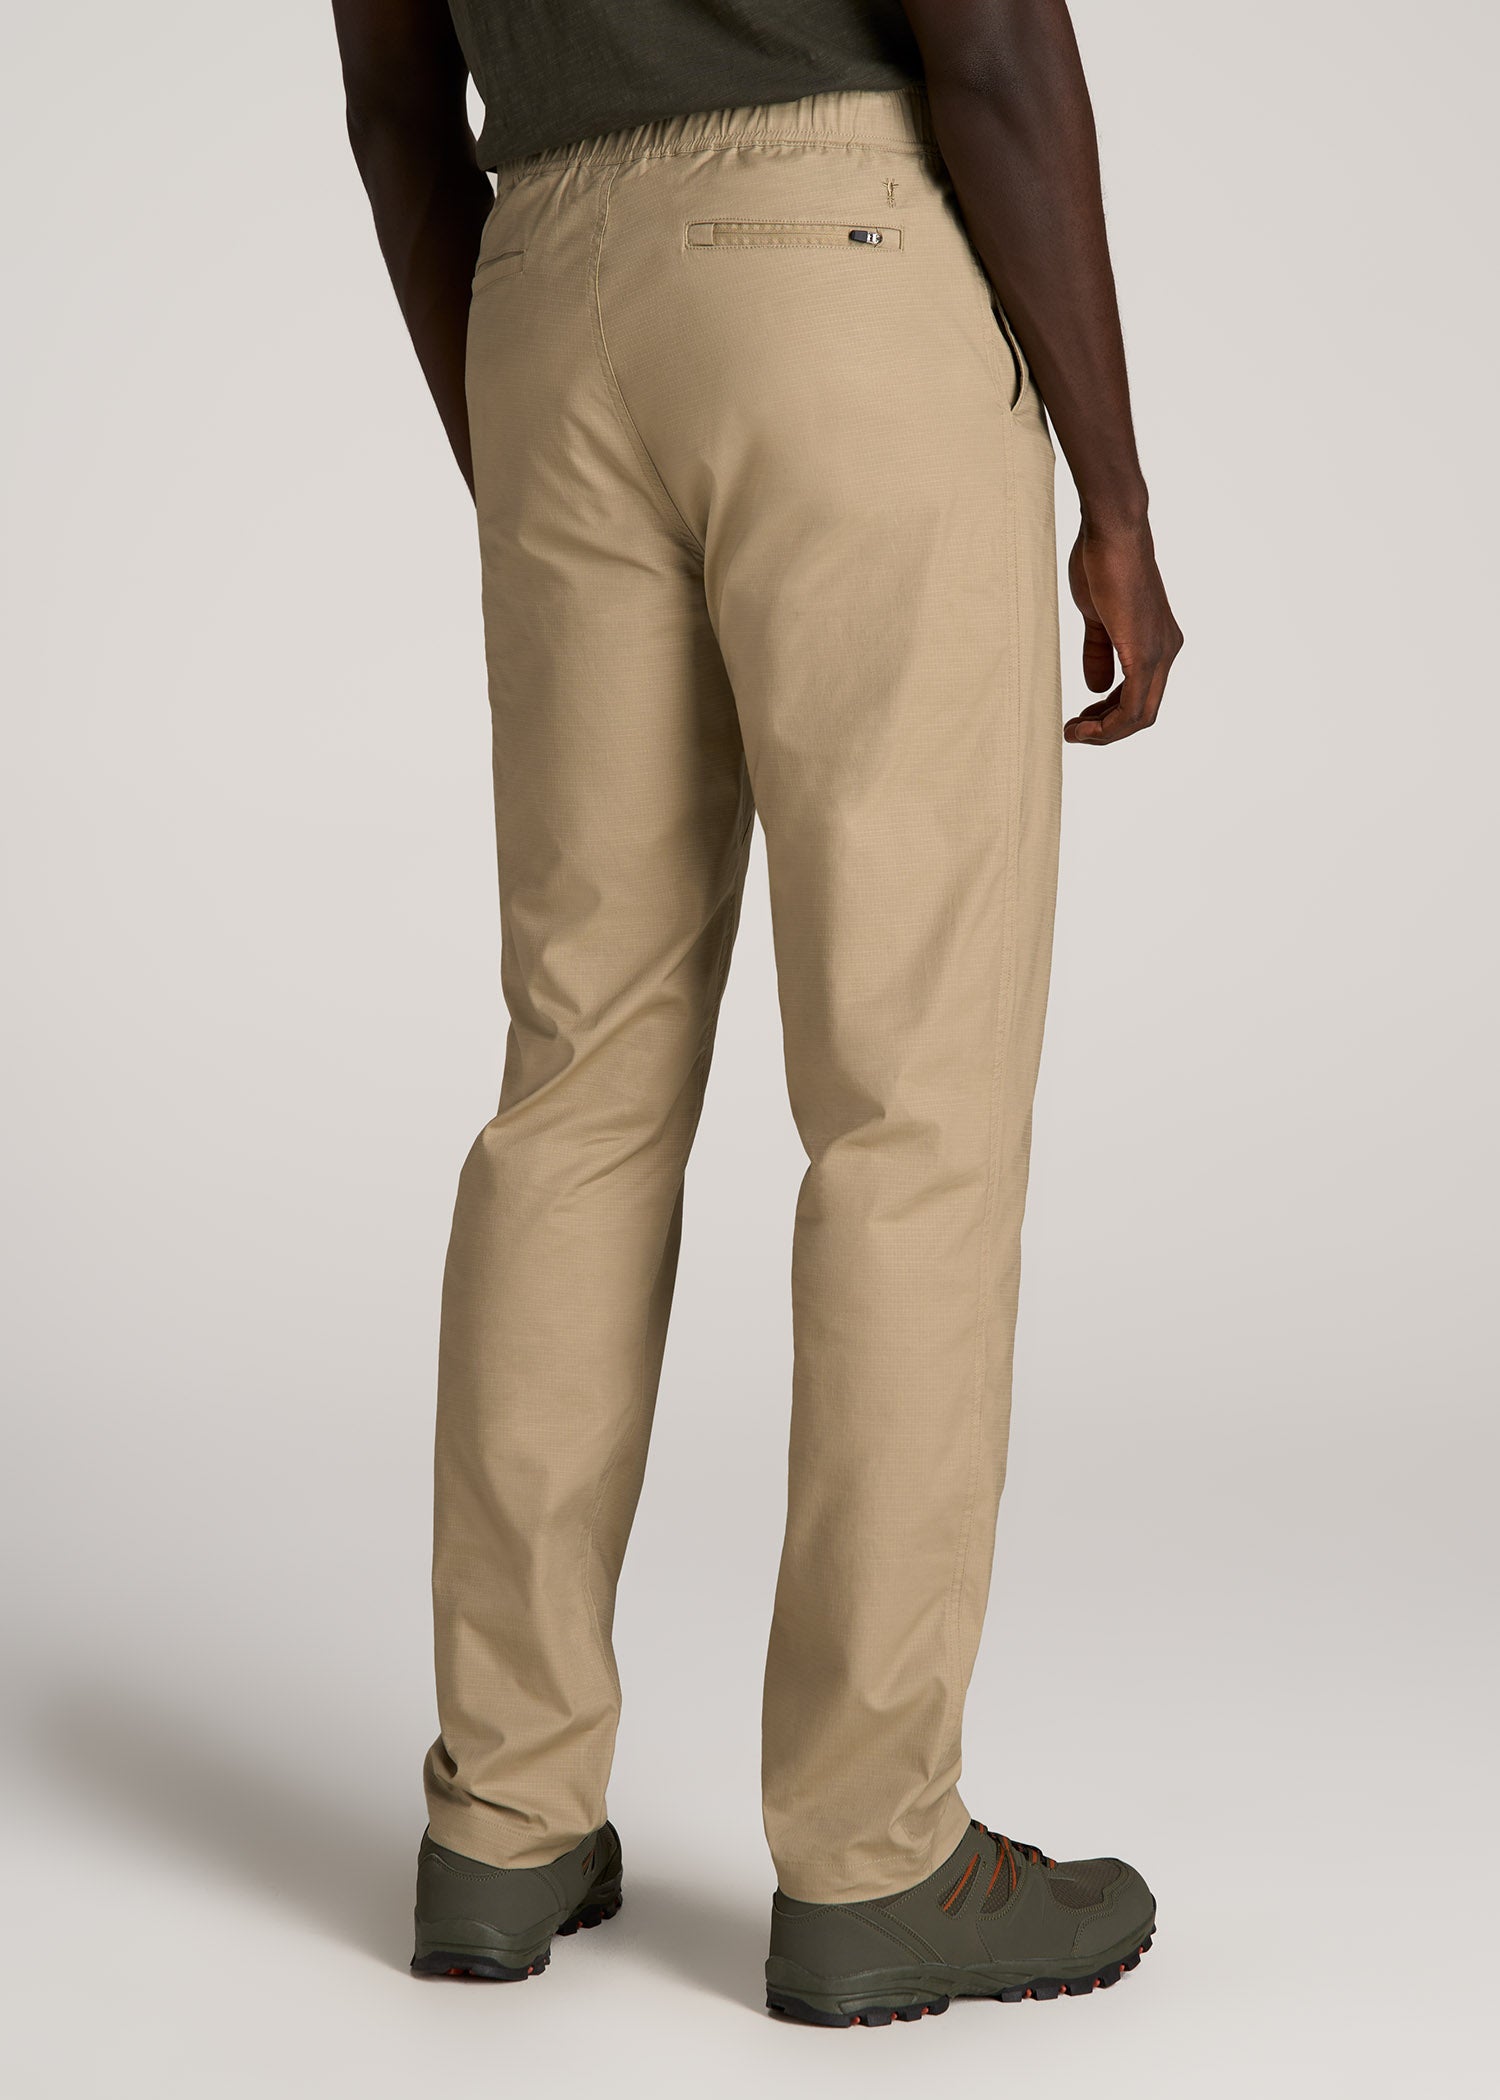 Tapered-Fit Ripstop Pants for Tall Men in Desert Khaki S / Tall / Desert Khaki